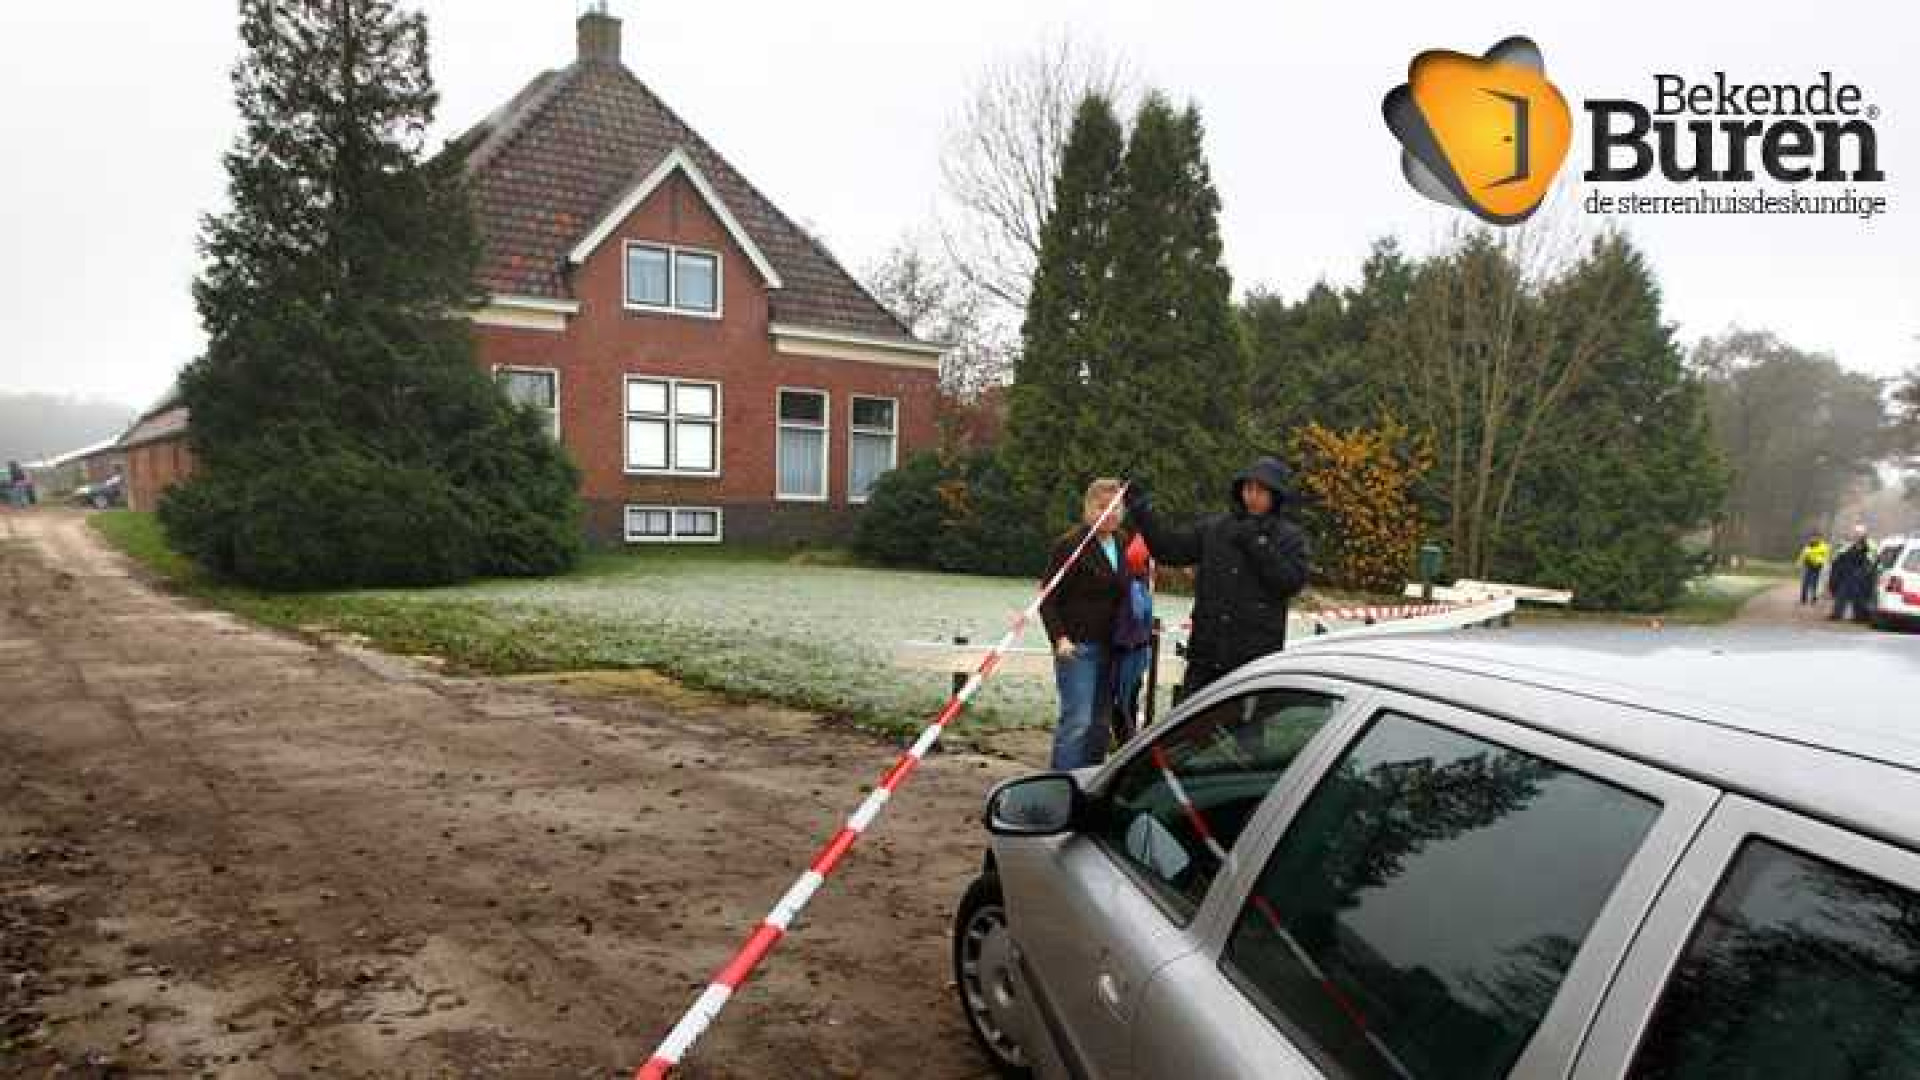 Moordenaar Marianne Vaatstra maakt miljoen euro winst op verkoop boerderij. Zie foto's